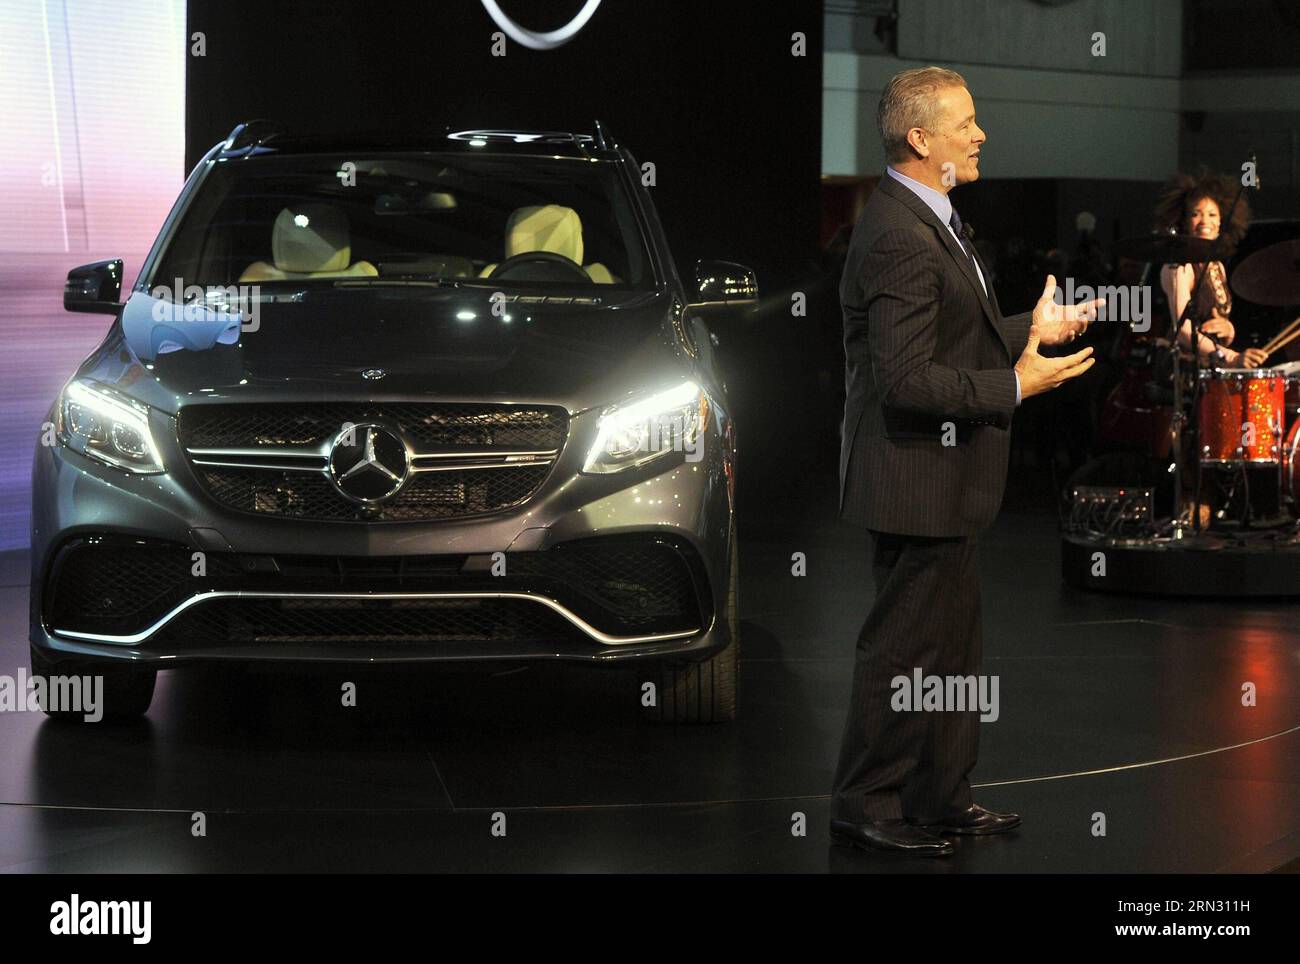 150401 -- NUEVA YORK, 1 de abril de 2015 -- Tobias Moers, presidente del Consejo de Administración de Mercedes-AMG GmbH, presenta la nueva variante híbrida enchufable del BENZ GLE SUV en el Salón Internacional del Automóvil de Nueva York en Nueva York, Estados Unidos, el 1 de abril de 2015. Una nueva generación de súper autos que se dice que han llevado la velocidad, la potencia y la tecnología automotriz a nuevos niveles se exhibirá en el Salón Internacional del Automóvil de Nueva York 2015 NYIAS, programado para llevarse a cabo del 3-12 al 26 de abril en el Centro de Convenciones Jacob K. Javits en Manhattan, Nueva York. EE.UU.-NUEVA YORK-INTERNACIONAL AUTO SHOW WANGXLEI PUBLICATIONXNOTXINXCHN Foto de stock